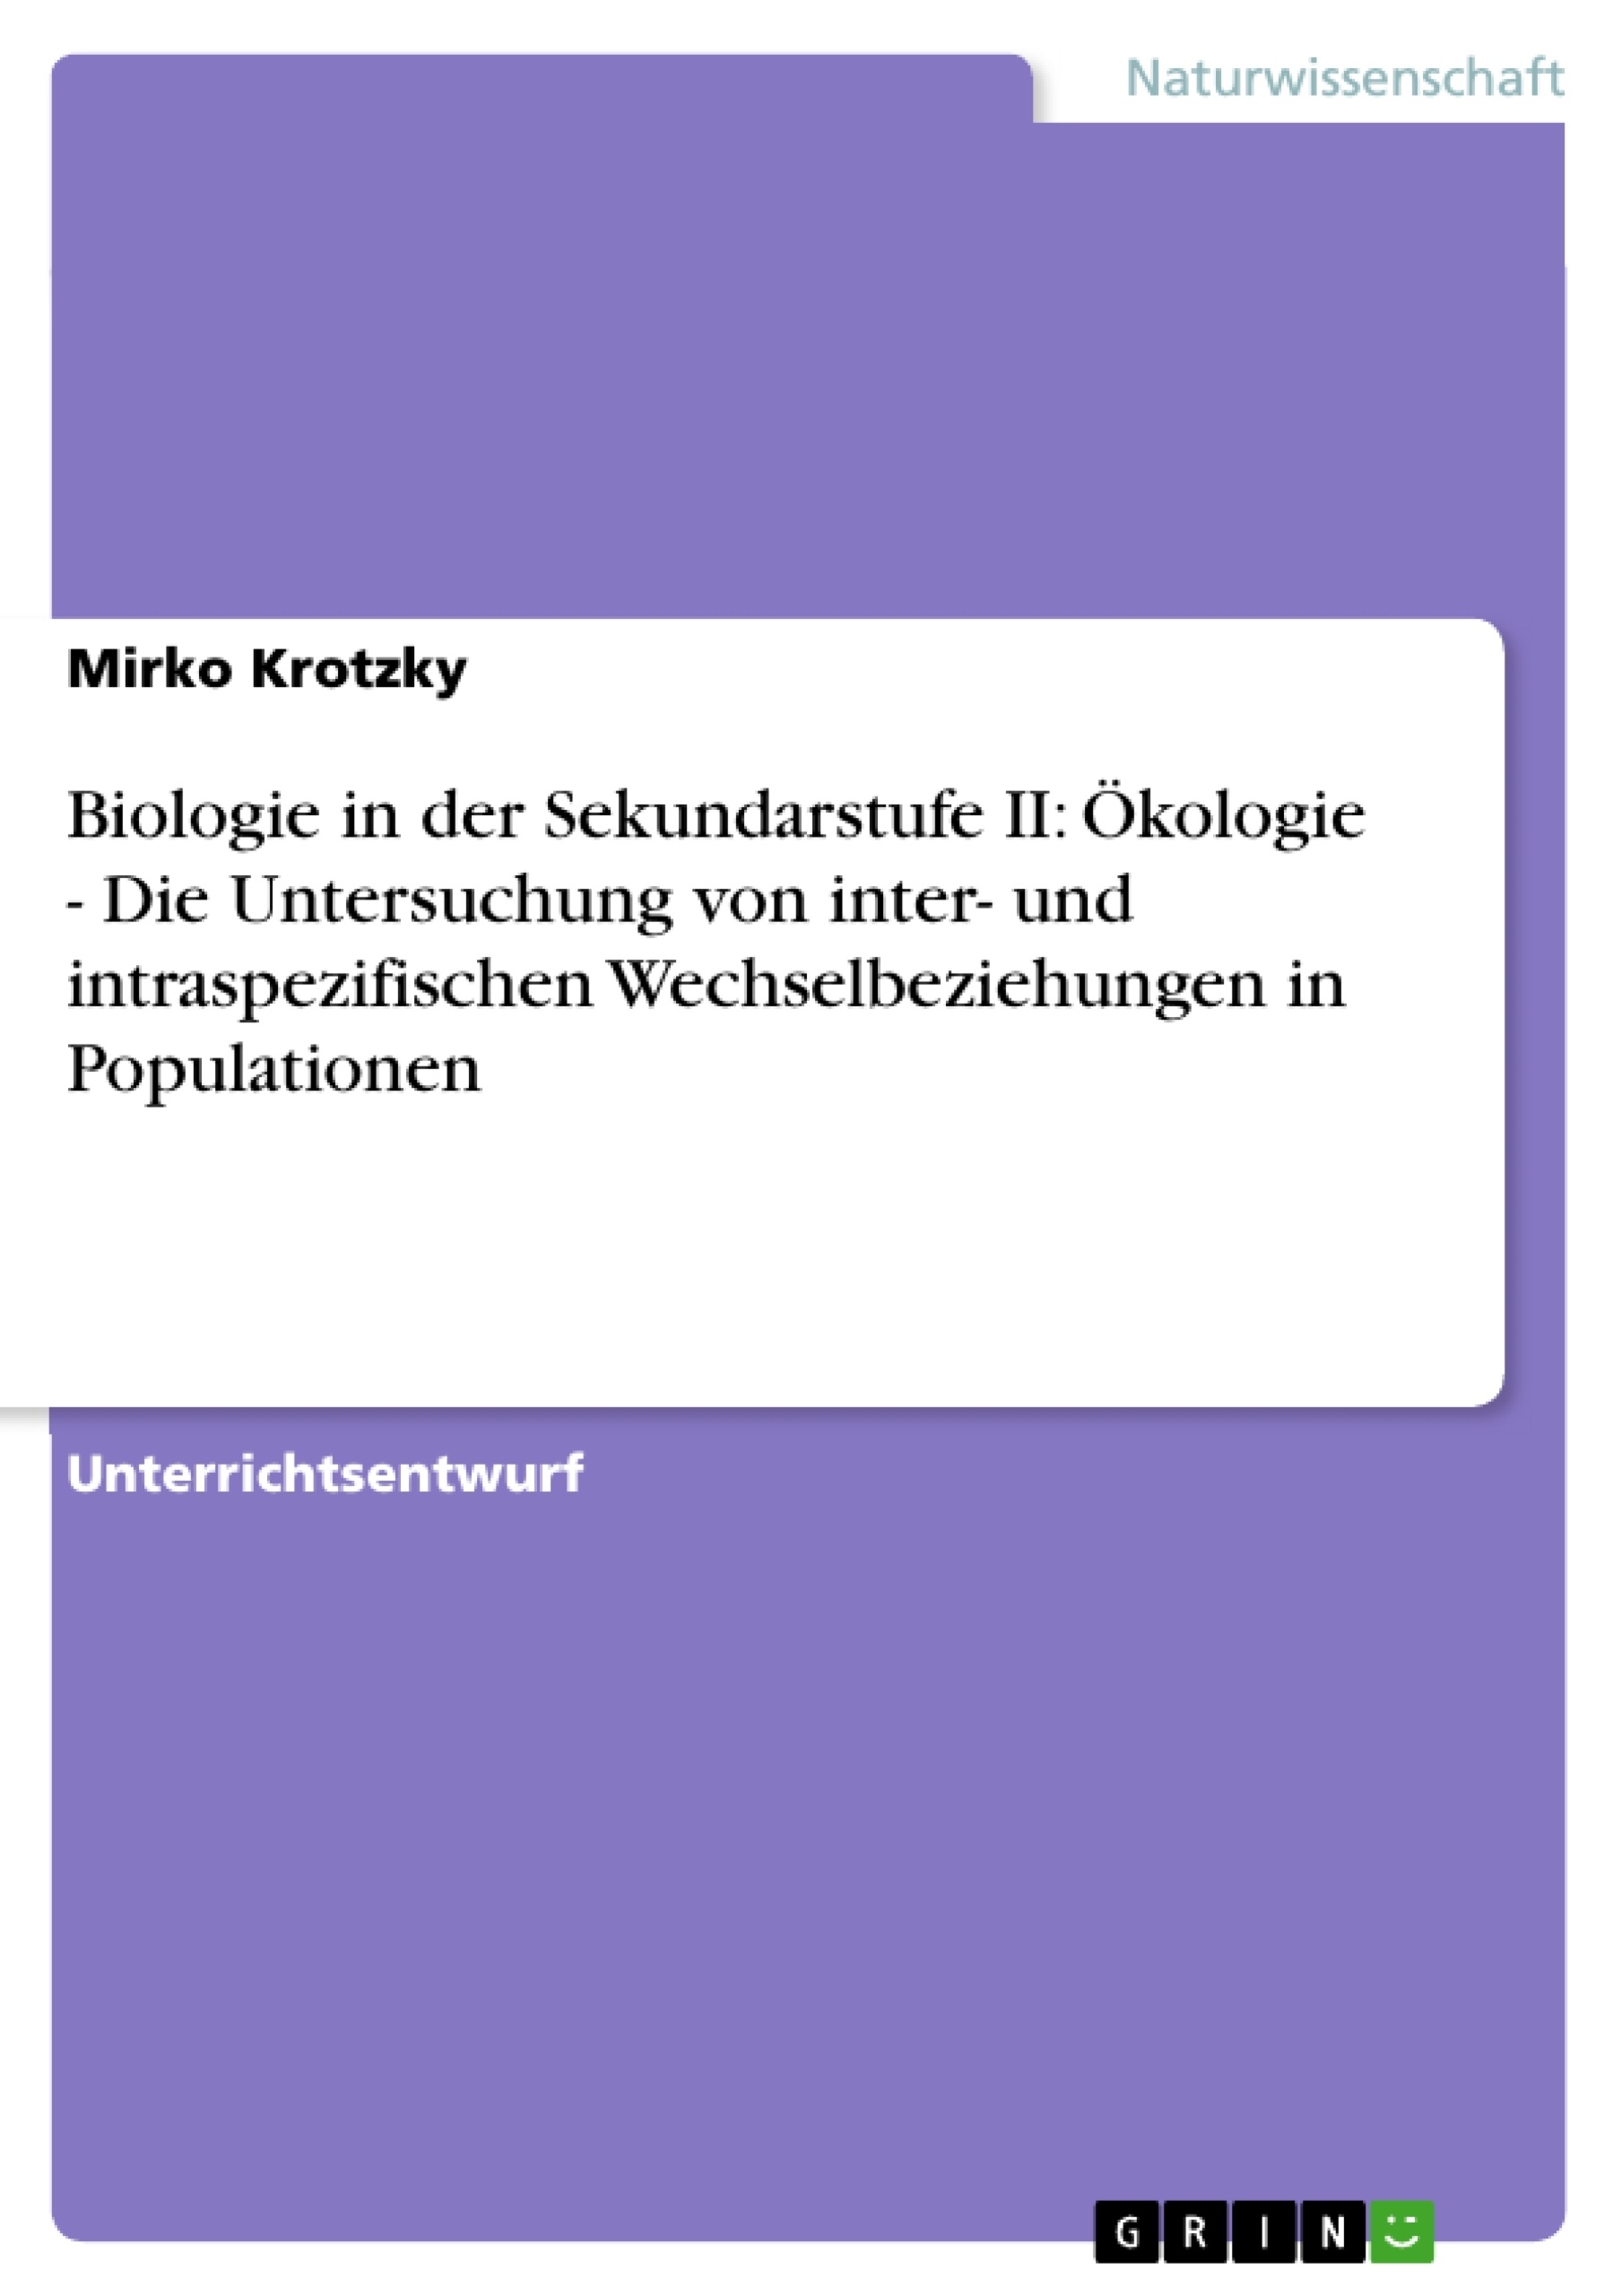 Title: Biologie in der Sekundarstufe II: Ökologie - Die Untersuchung von inter- und intraspezifischen Wechselbeziehungen in Populationen